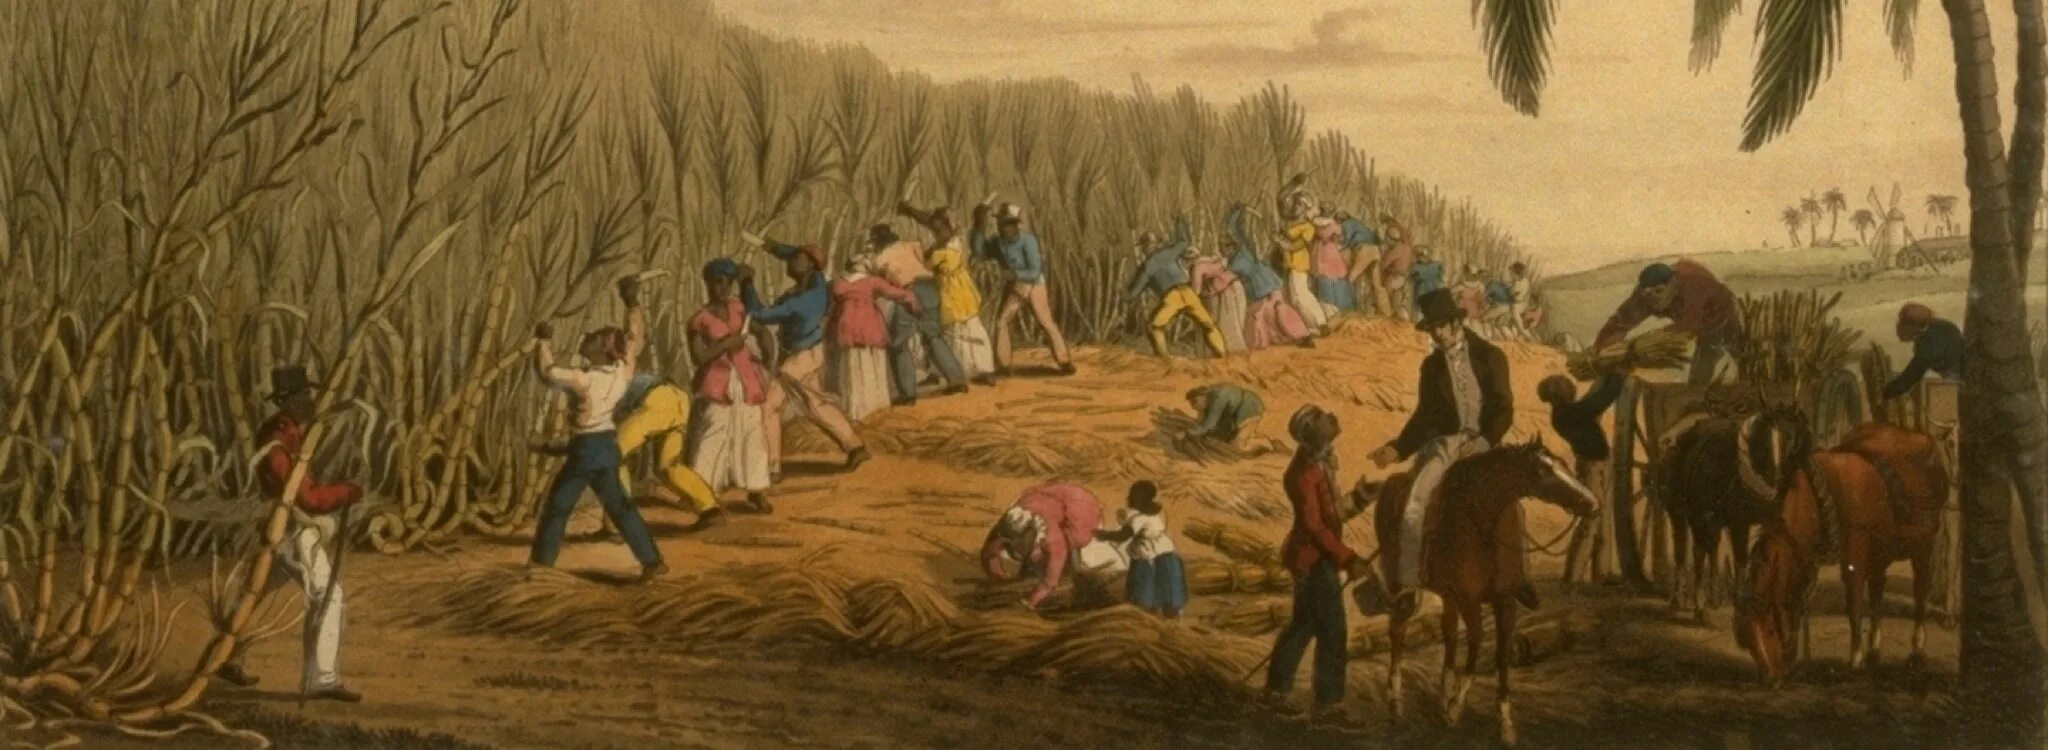 Плантации сахарного тростника 19 век. Работорговля Англия 18 век. Рабство в США 19 век на плантациях хлопка. Рабы на плантациях. История чернокожих